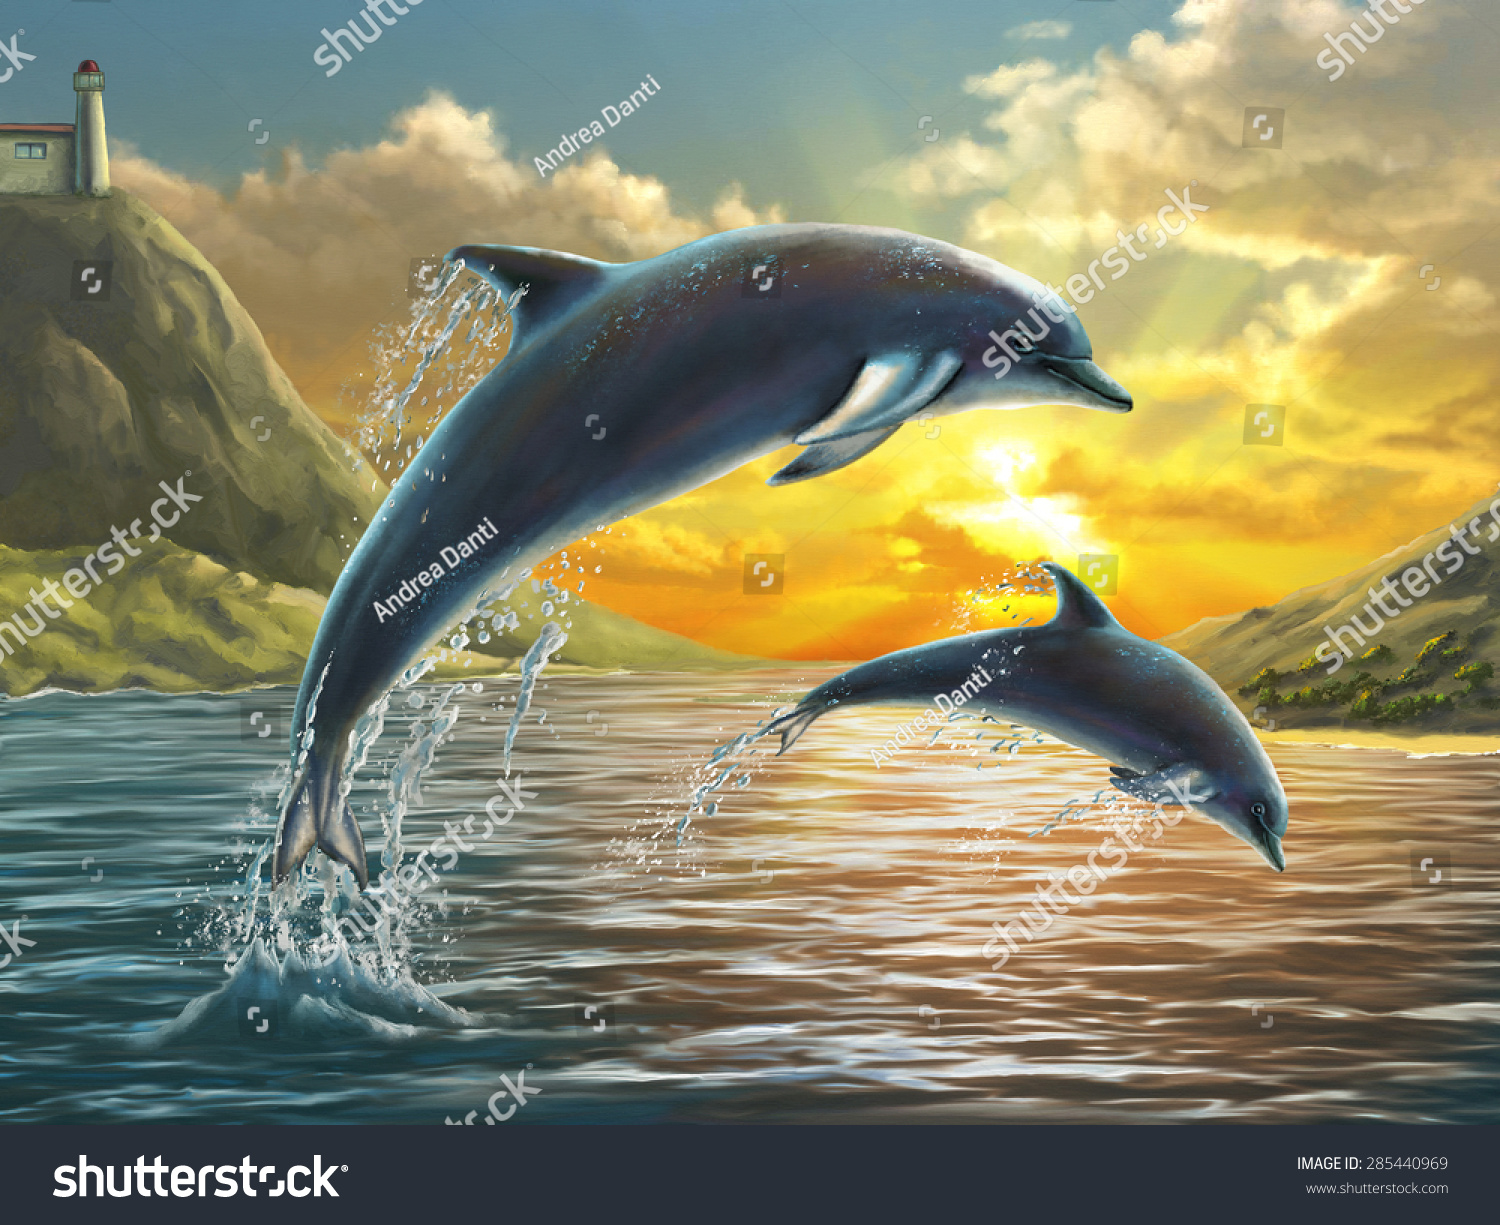 2頭のイルカが美しい夕日の上を海から飛び降りた デジタル画 のイラスト素材